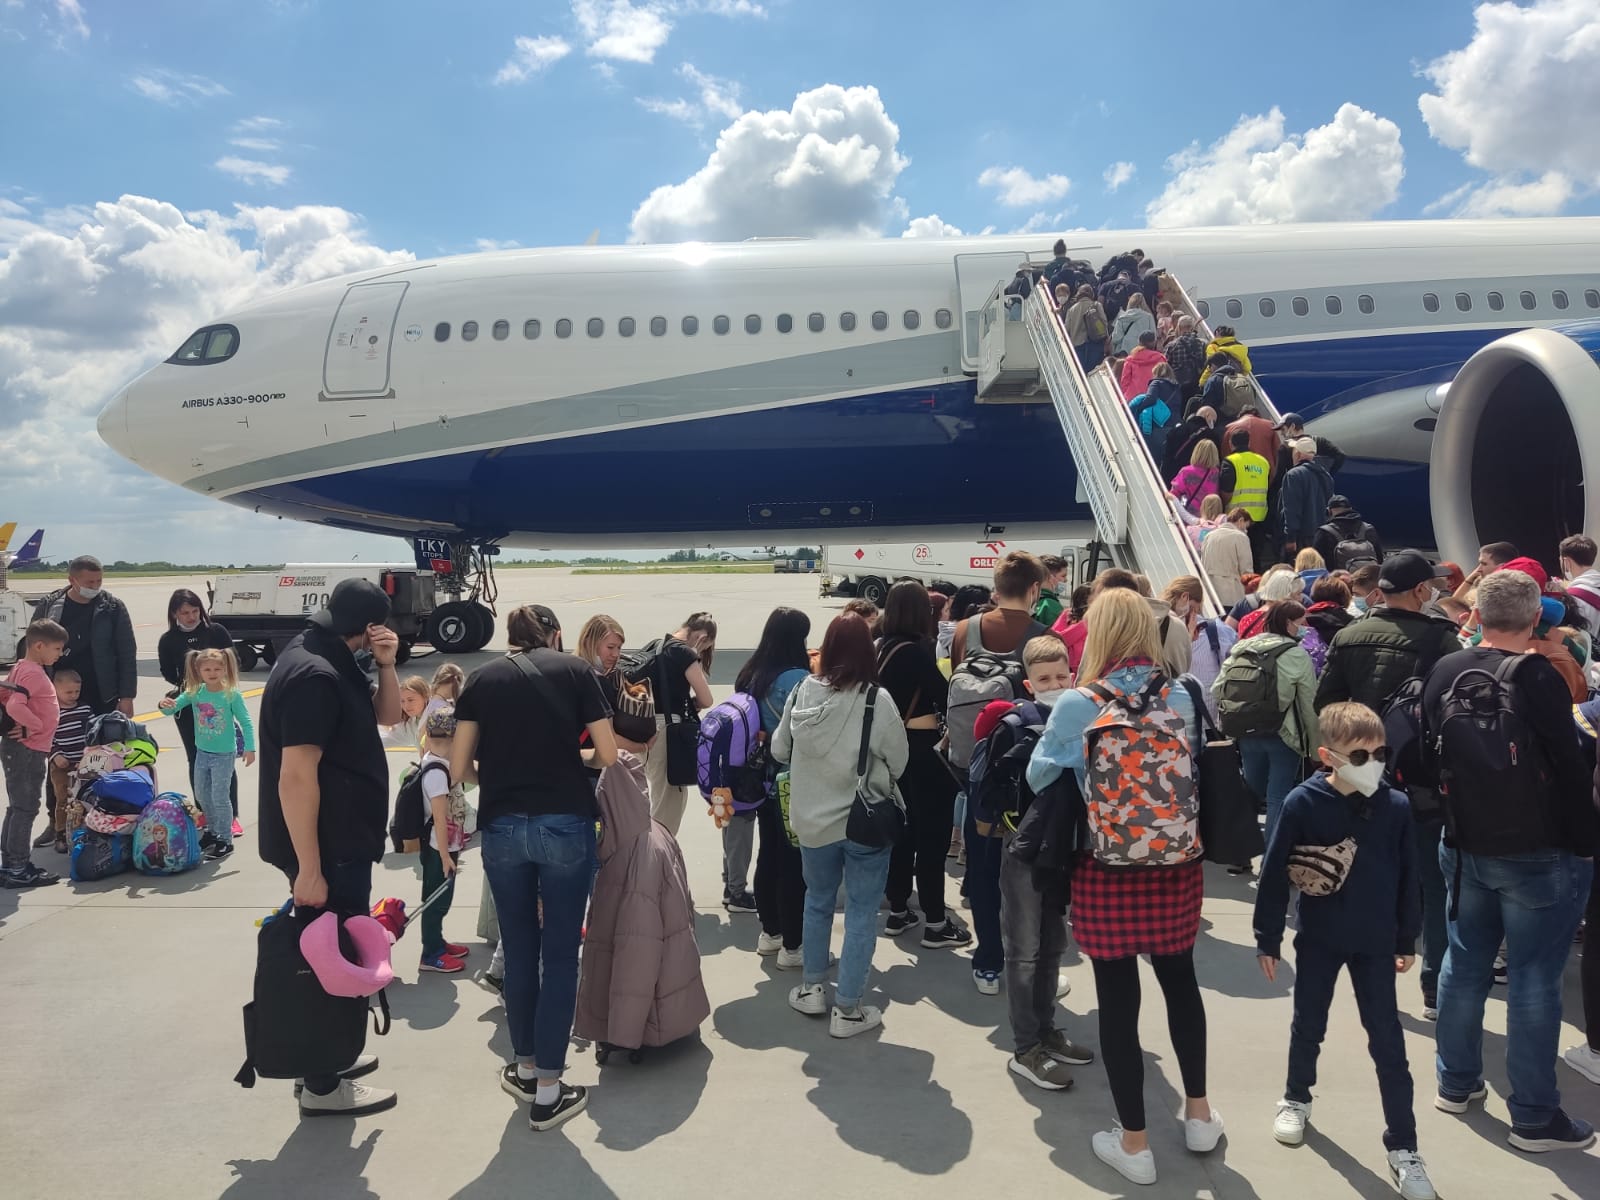 Une foule de personnes attend avec ses bagages sur une aire de trafic, tandis que d’autres montent des escaliers pour embarquer dans un avion